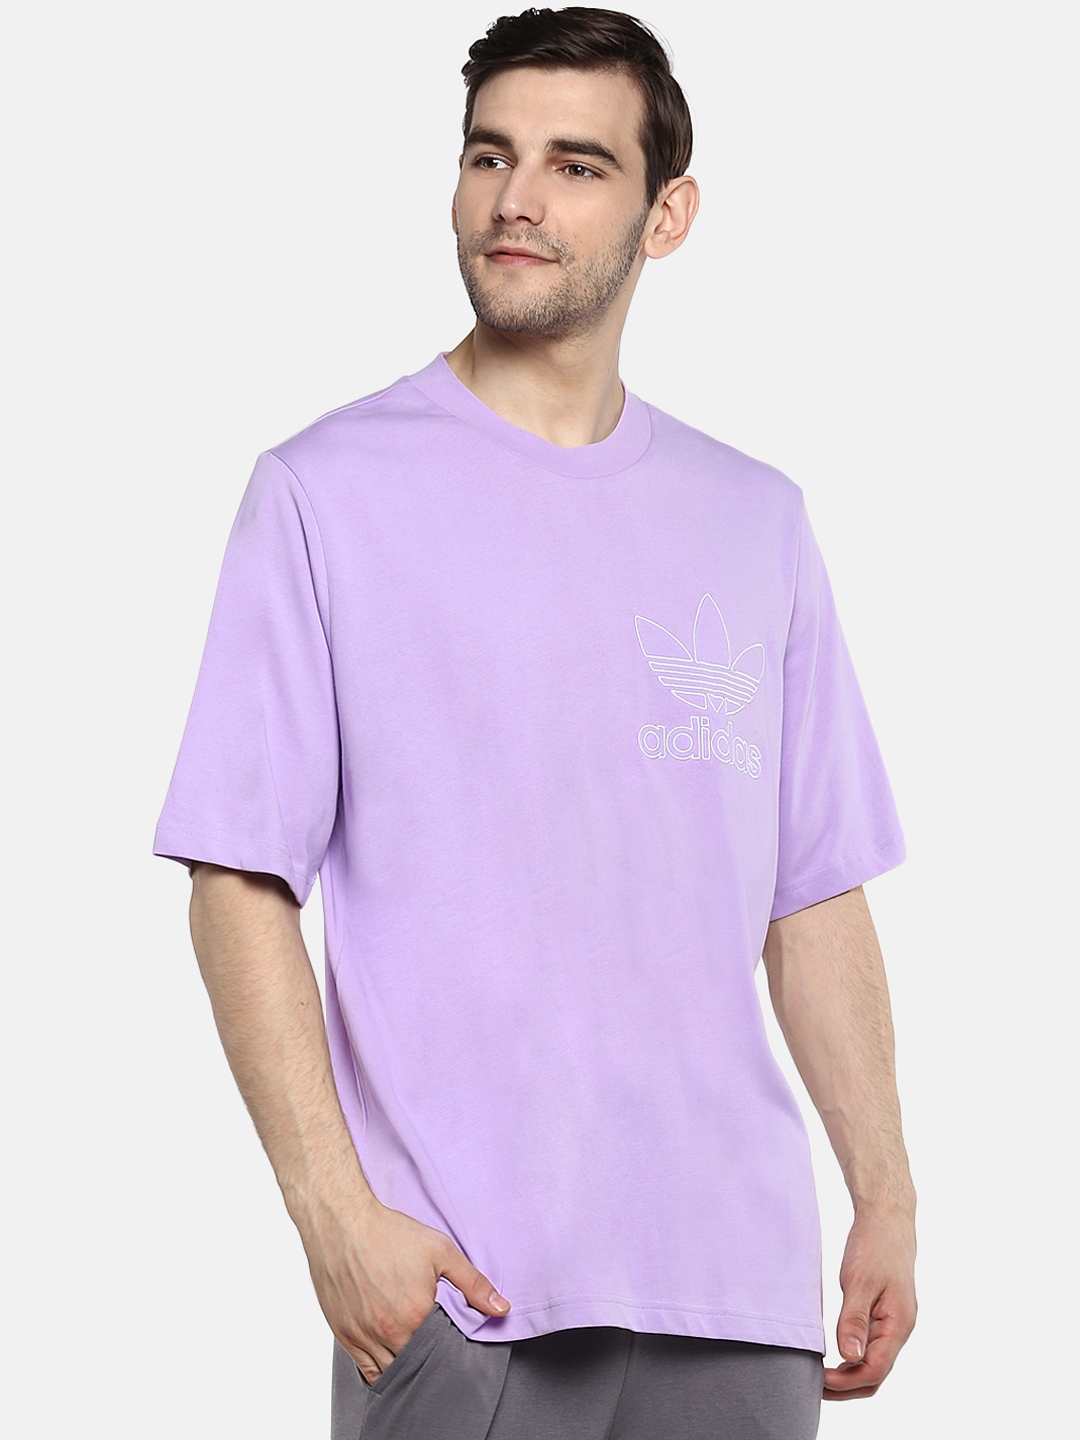 adidas lavender shirt